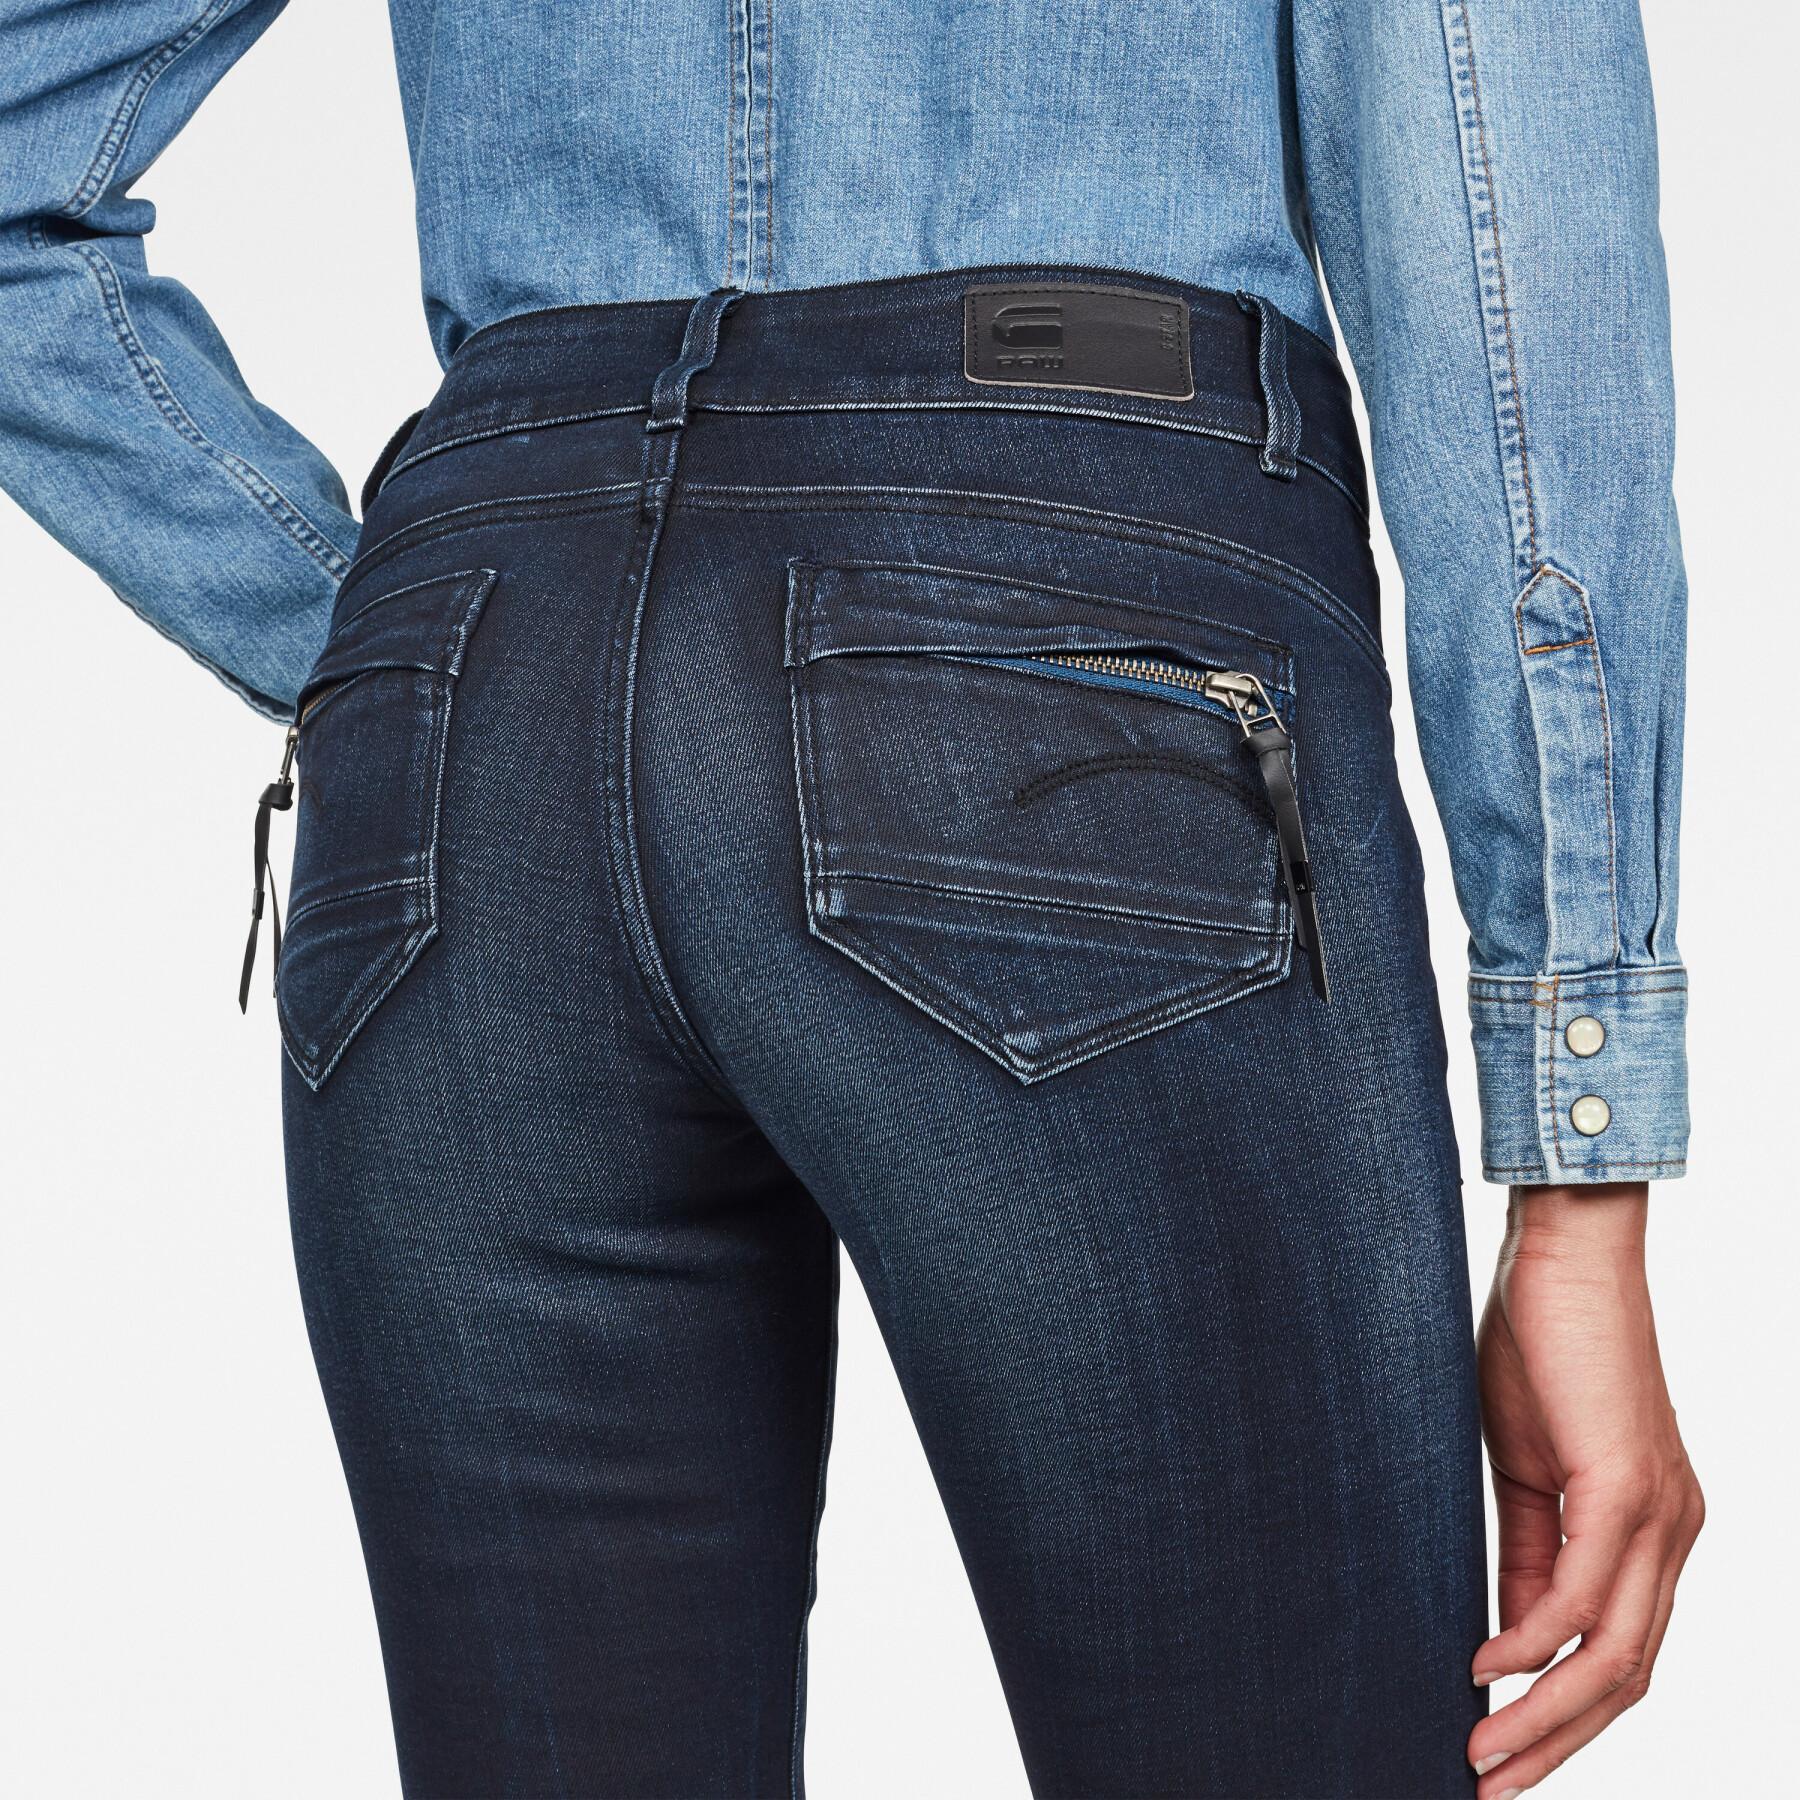 Skinny jeans för kvinnor G-Star Midge Cody Mid